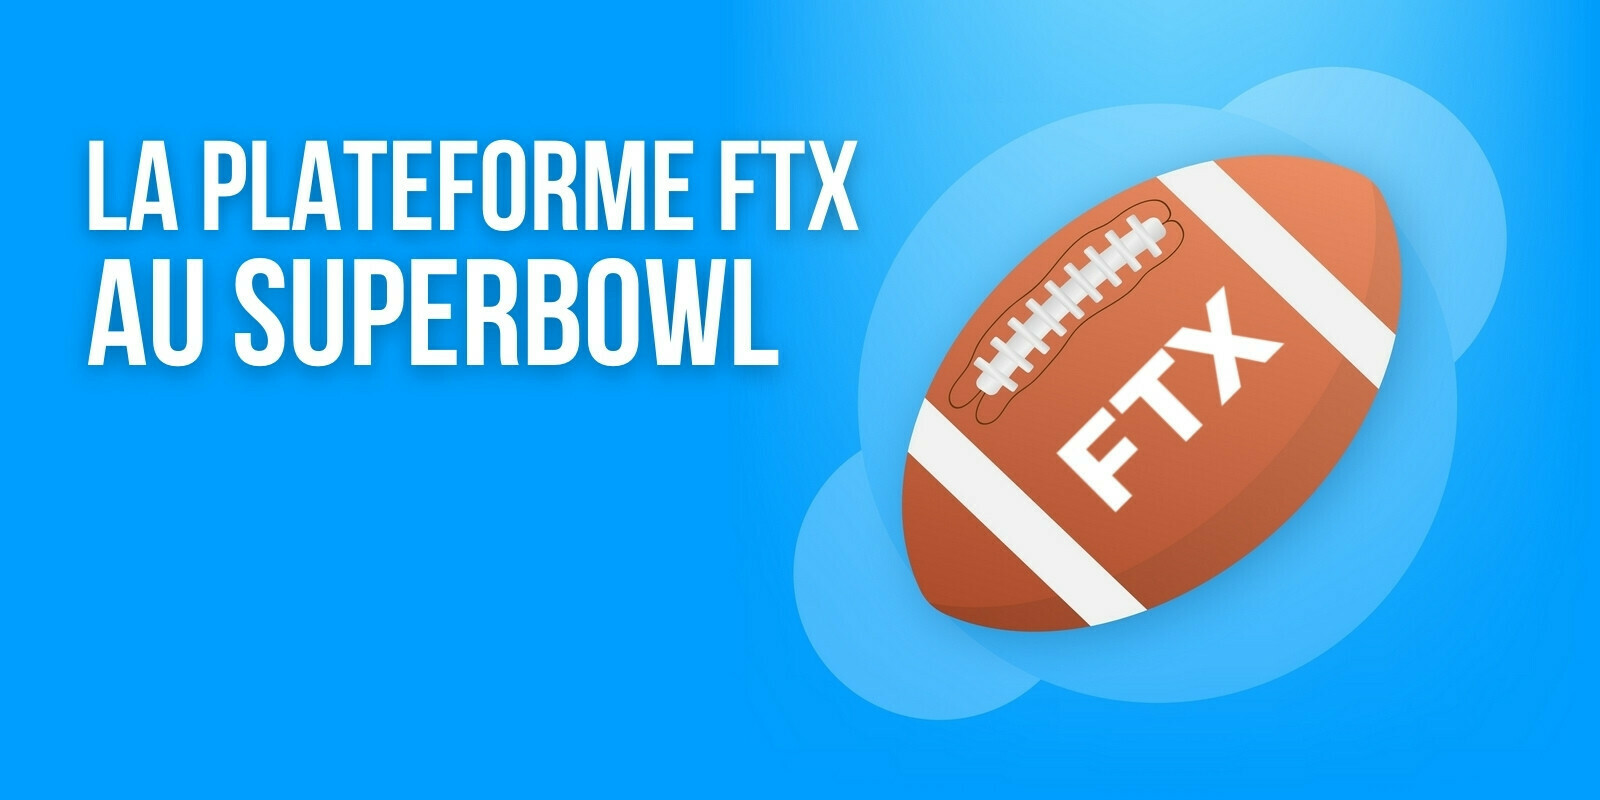 FTX dépensera plusieurs millions de dollars pour s’offrir une publicité pendant le Super Bowl